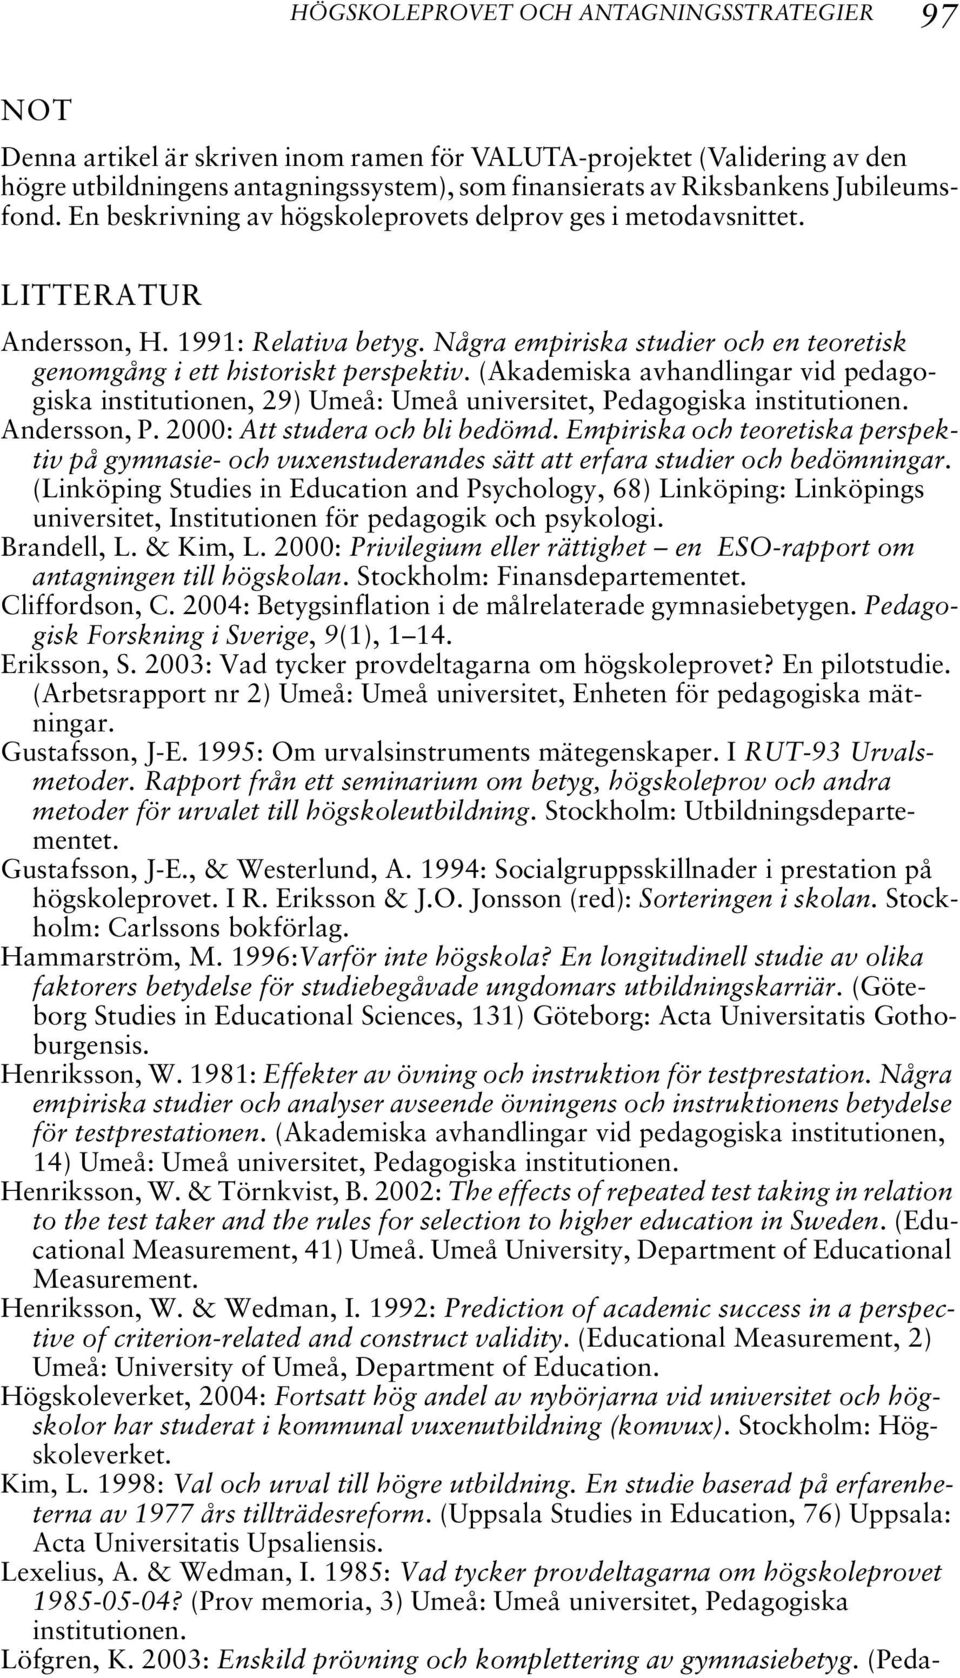 Några empiriska studier och en teoretisk genomgång i ett historiskt perspektiv. (Akademiska avhandlingar vid pedagogiska institutionen, 29) Umeå: Umeå universitet, Pedagogiska institutionen.